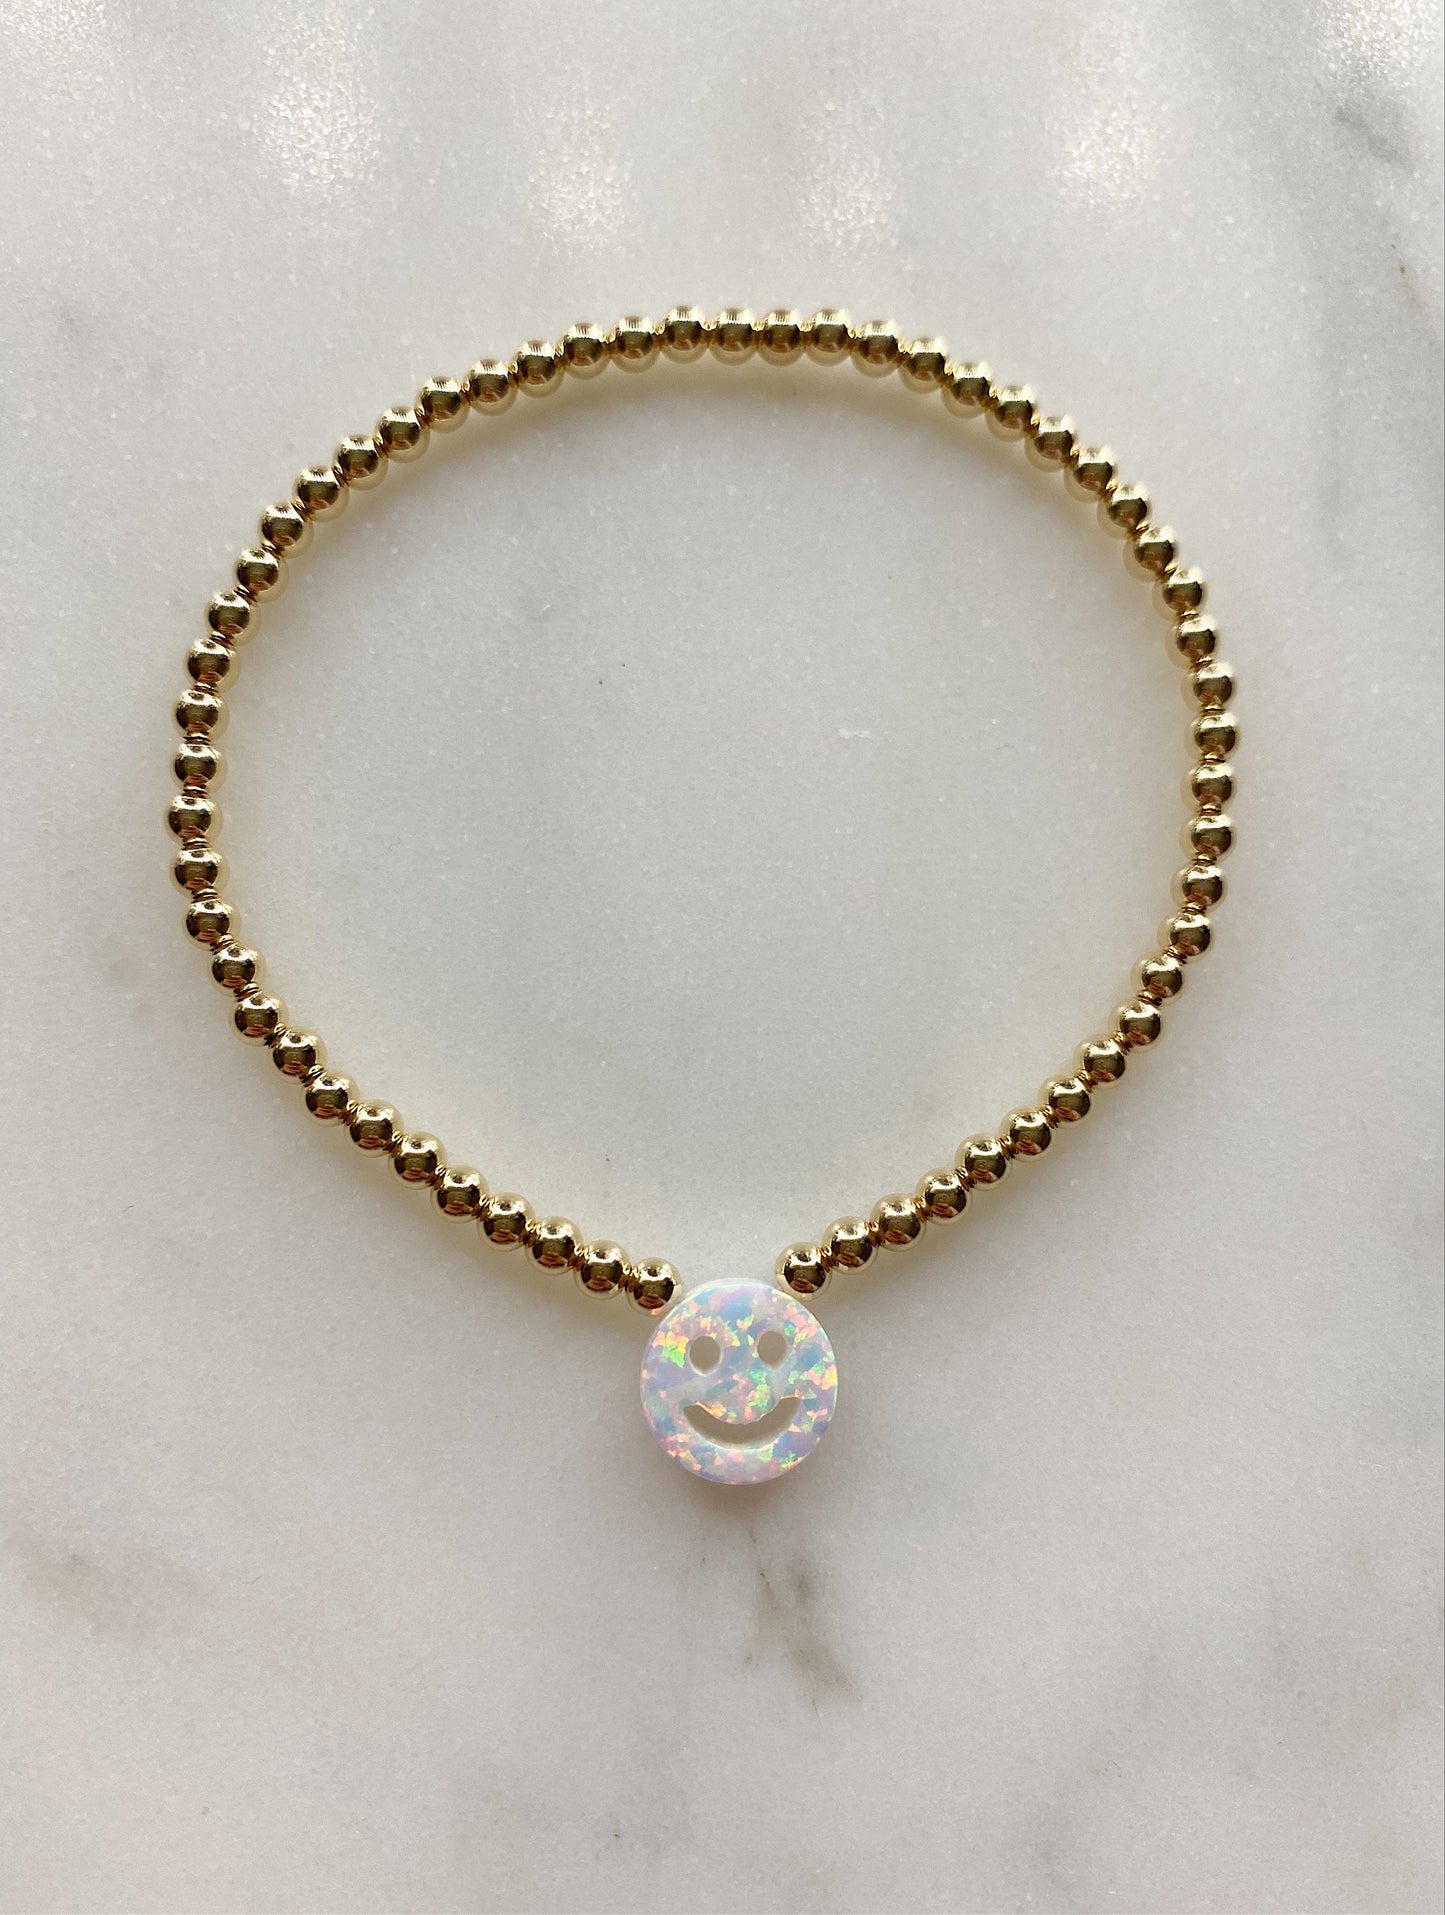 The Opal Smiley Bracelet